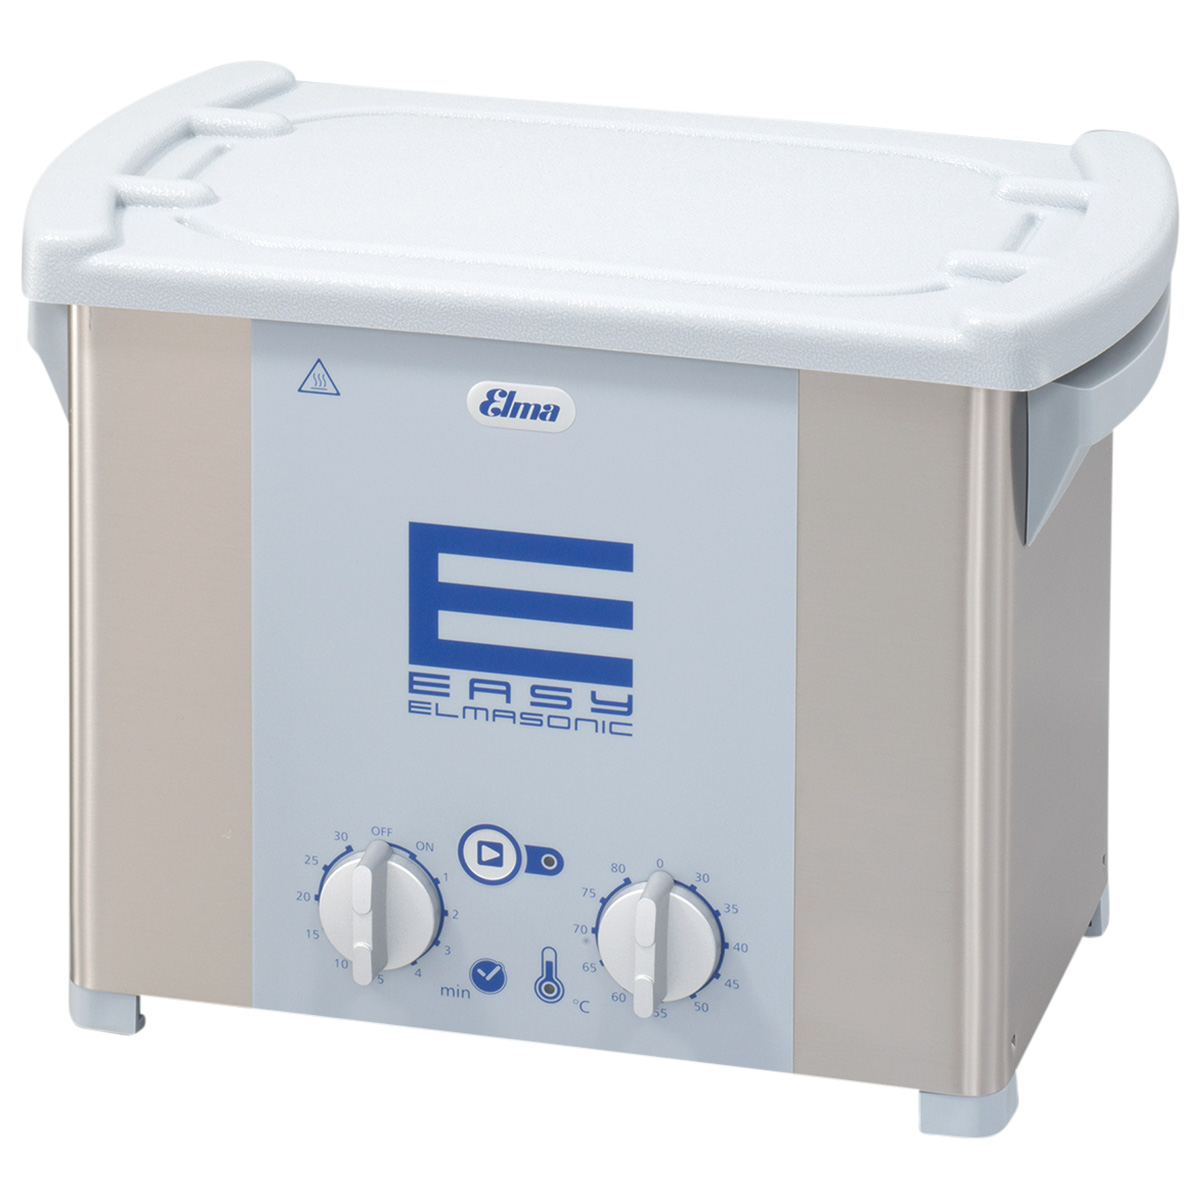 Elmasonic Easy 30H ultrasoonapparaat, met verwarming, 220 - 240 V